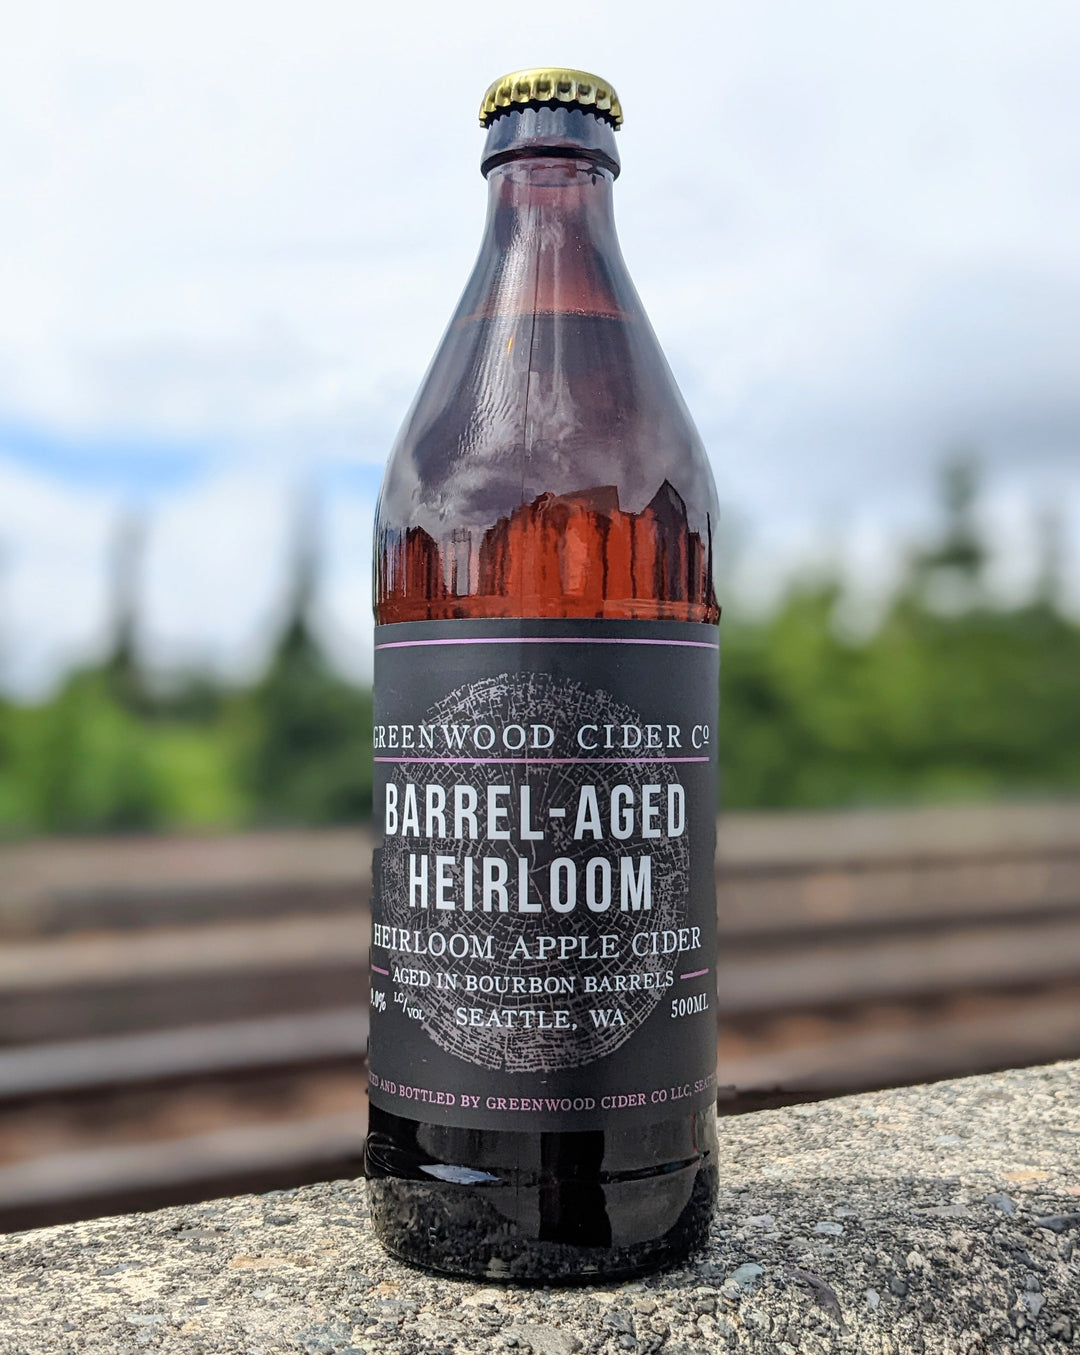 Greenwood Cider - Barrel-Aged Heirloom Cider (500 mL)